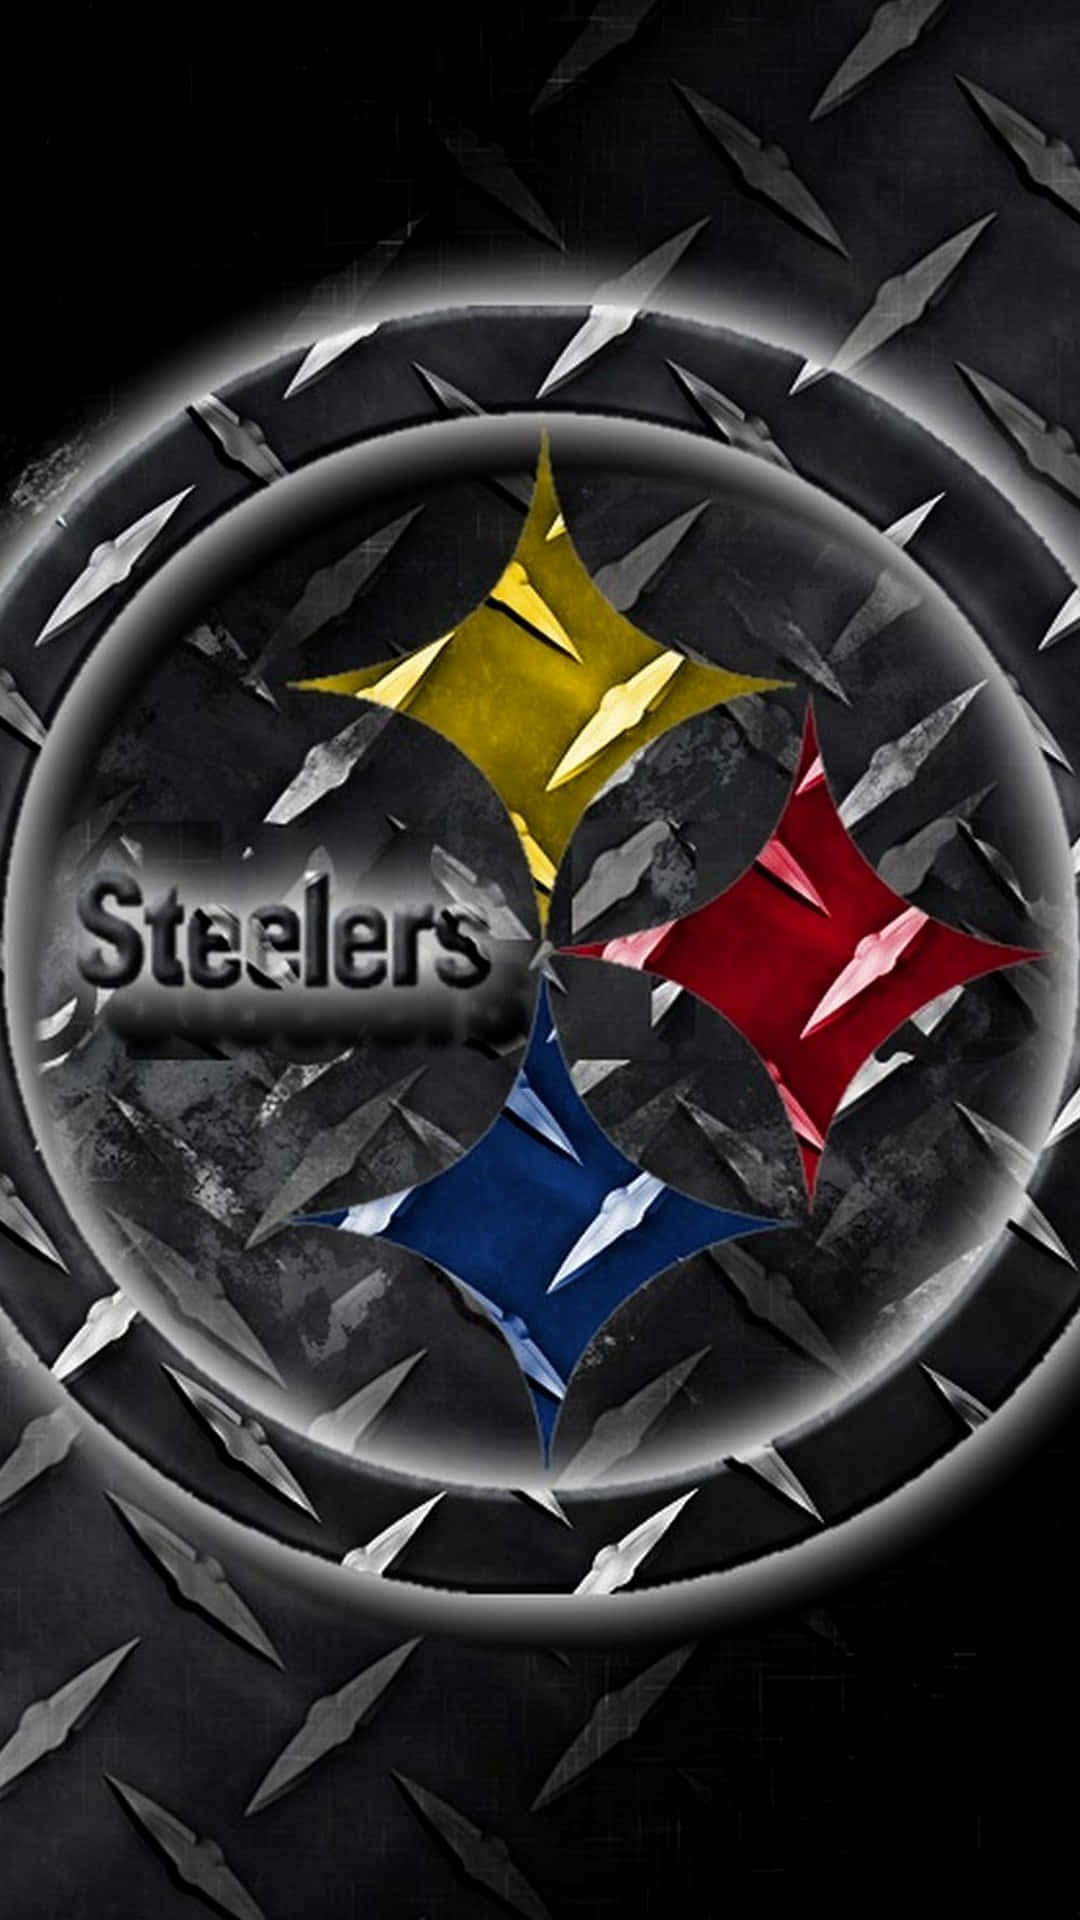 Uniphone Con Los Colores Y El Logotipo Del Equipo De Fútbol Americano De Los Pittsburgh Steelers. Fondo de pantalla